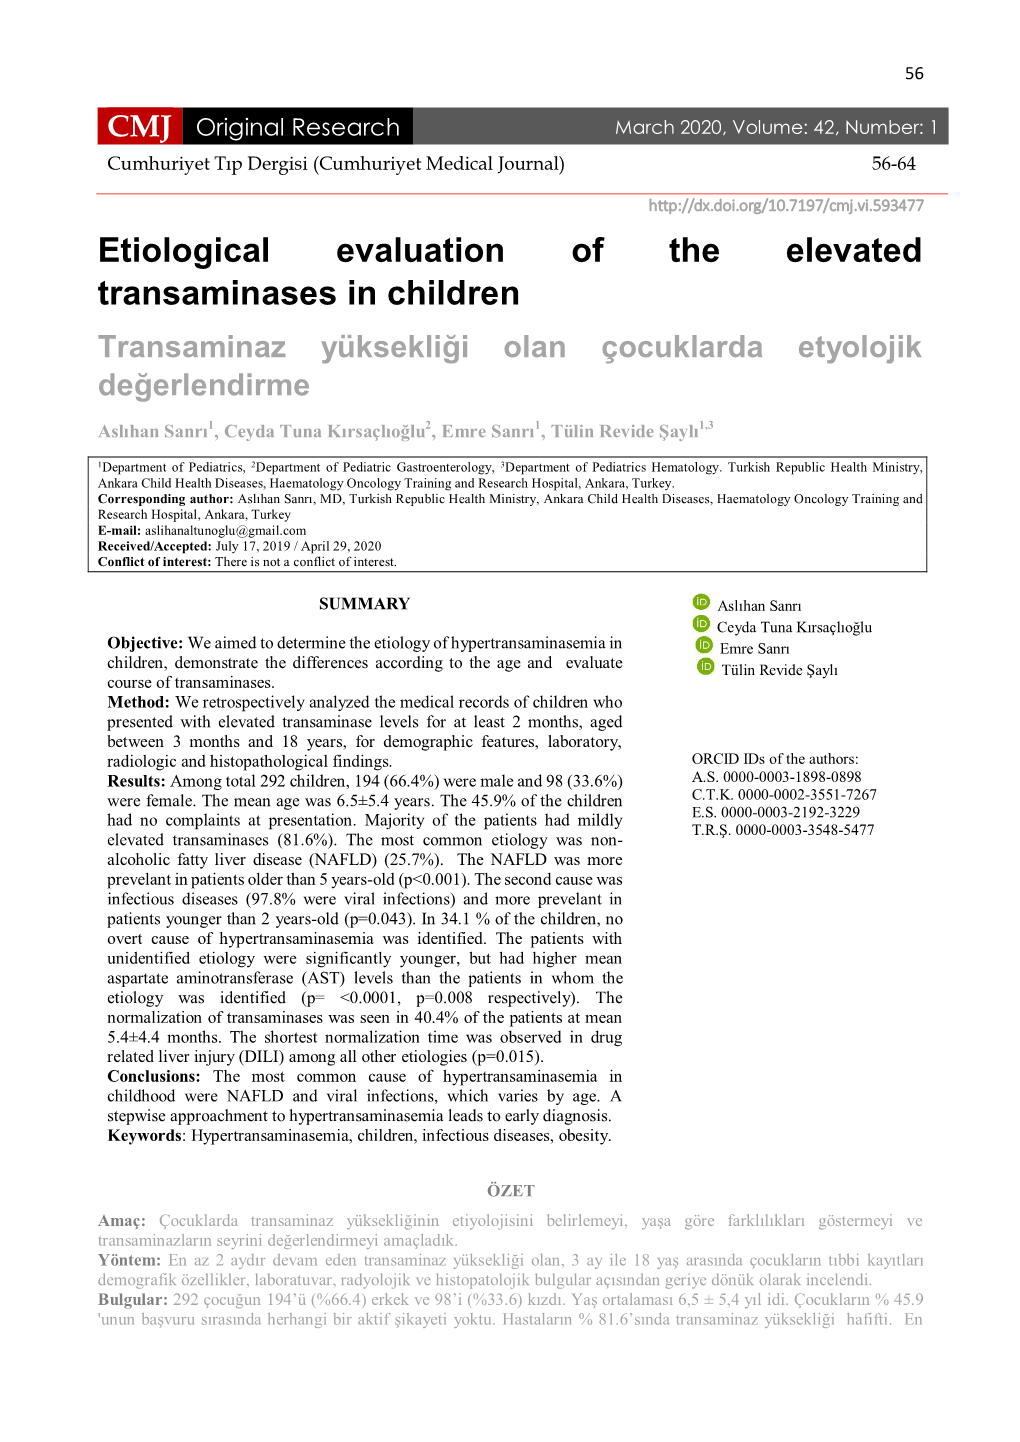 Etiological Evaluation of the Elevated Transaminases in Children Transaminaz Yüksekliği Olan Çocuklarda Etyolojik Değerlendirme